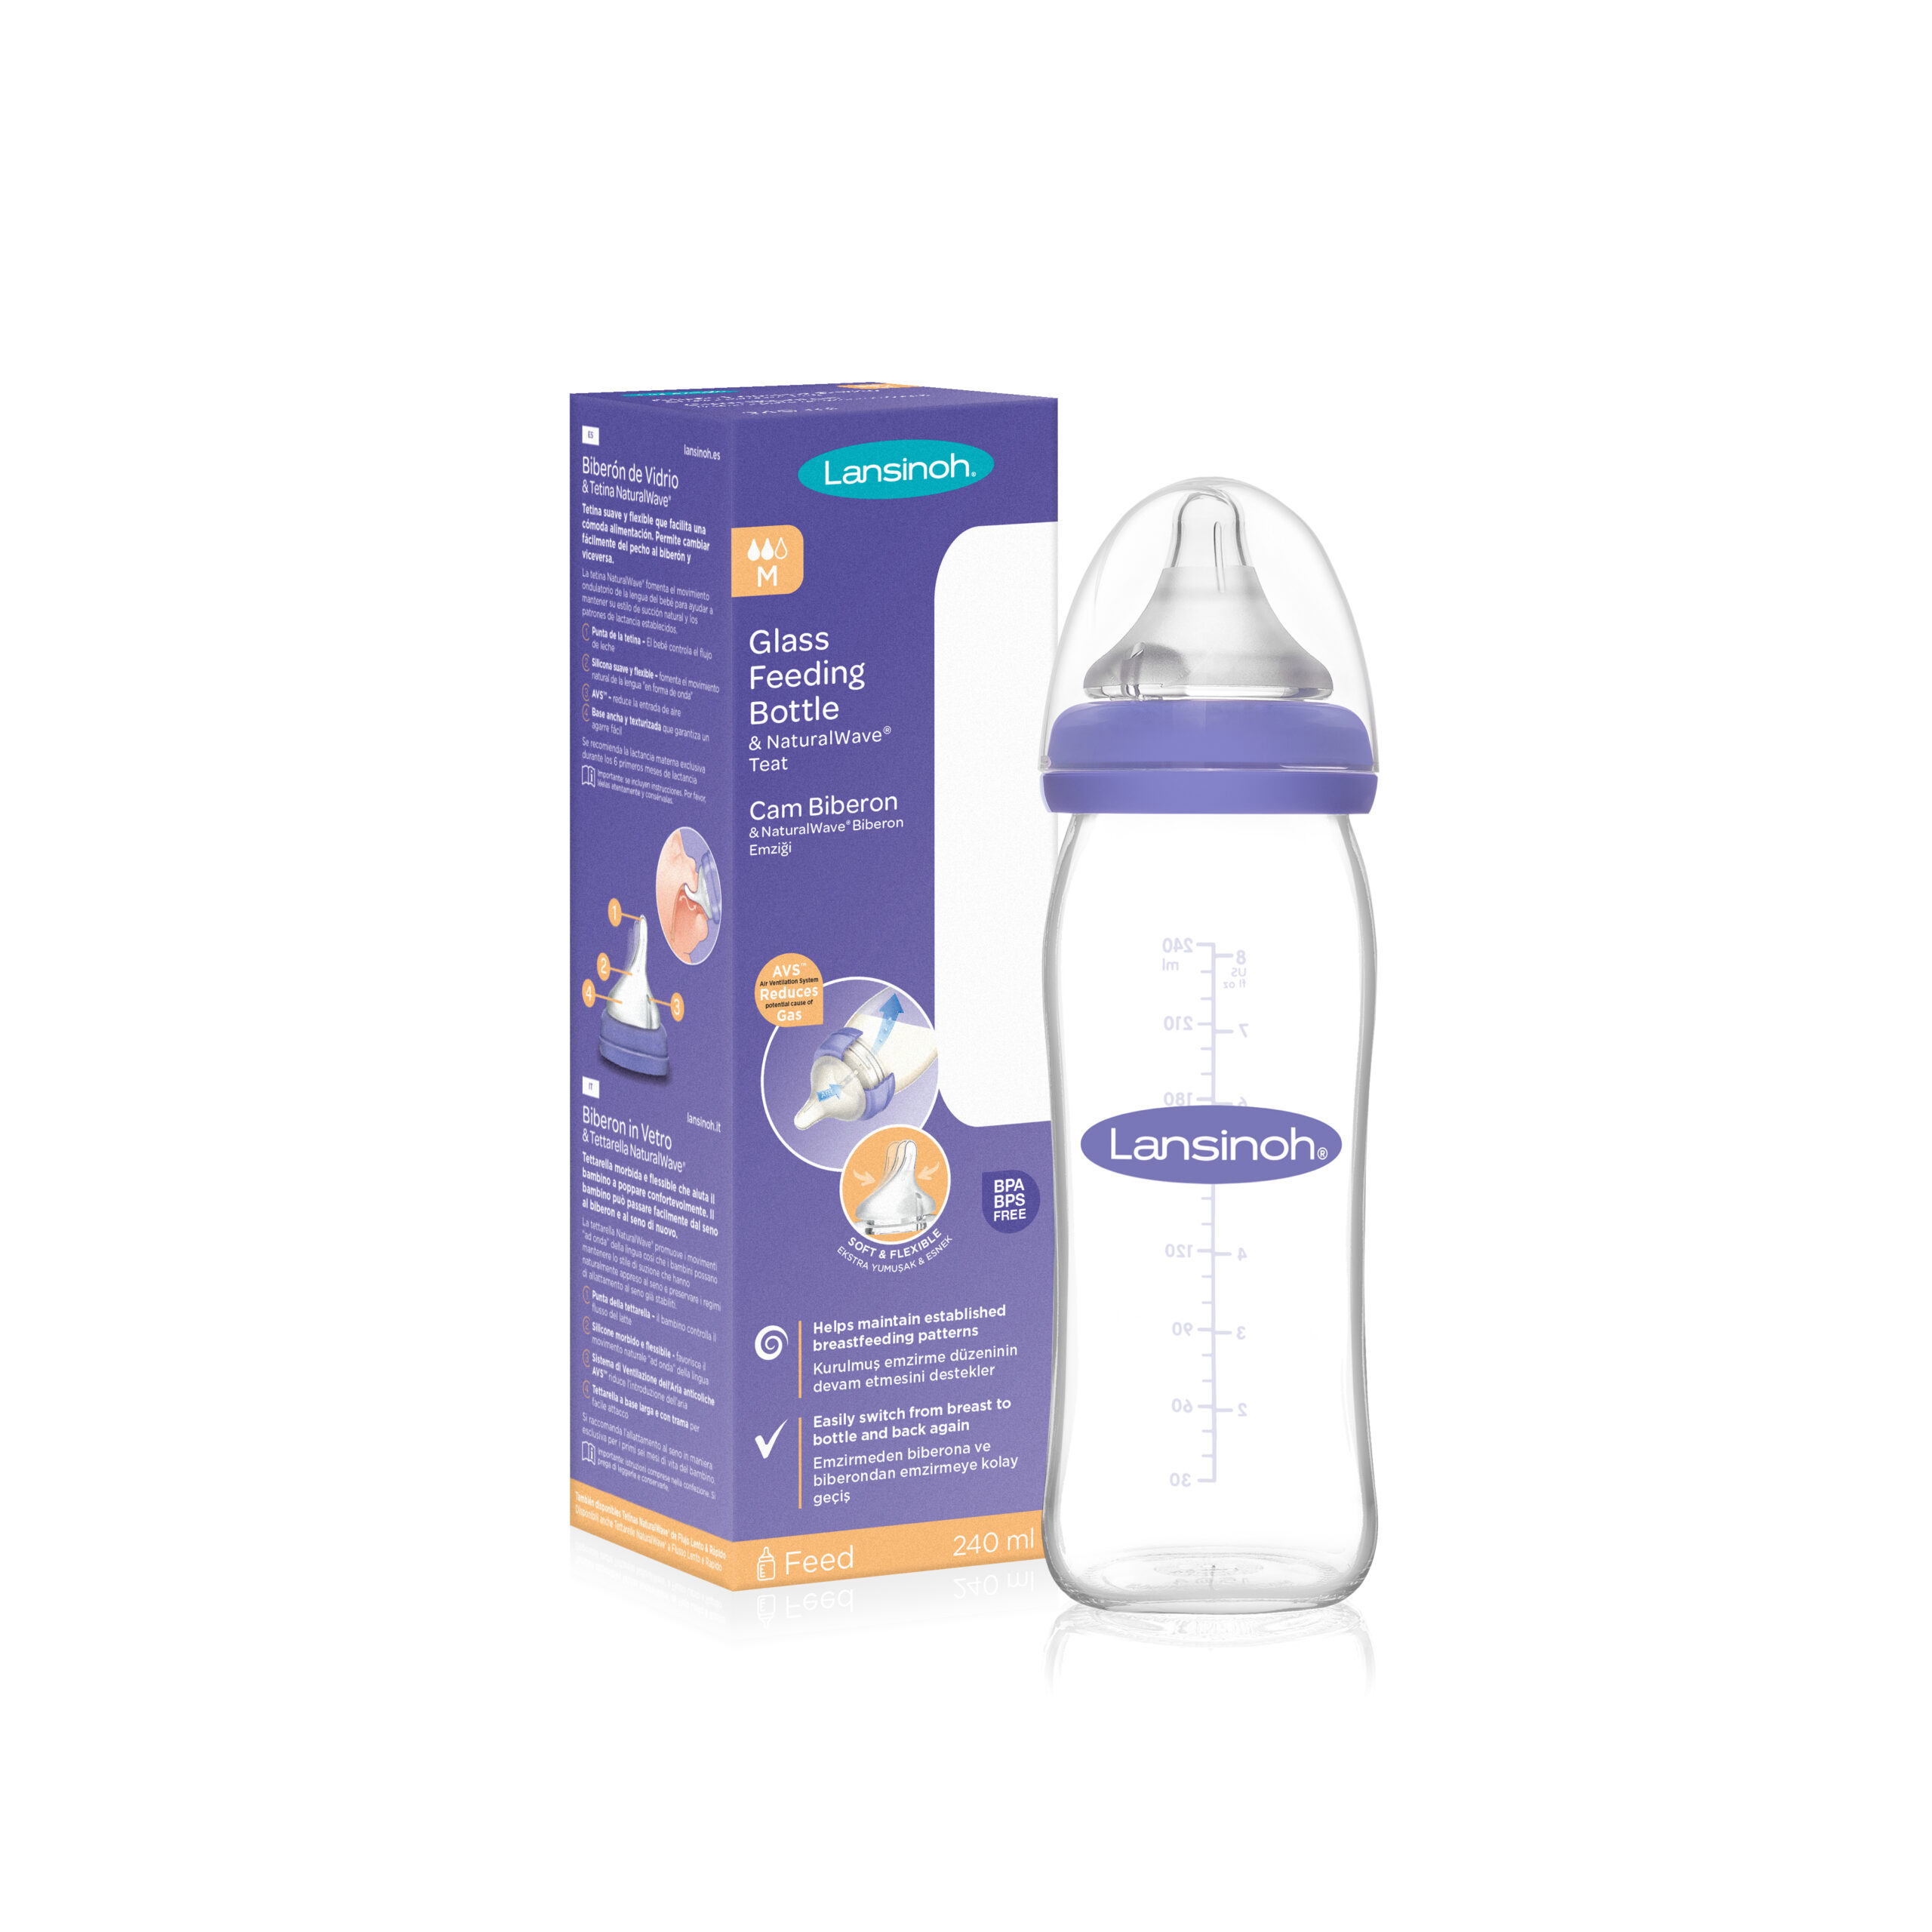 Lansinoh dojčenská fľaša na kŕmenie materským mliekom